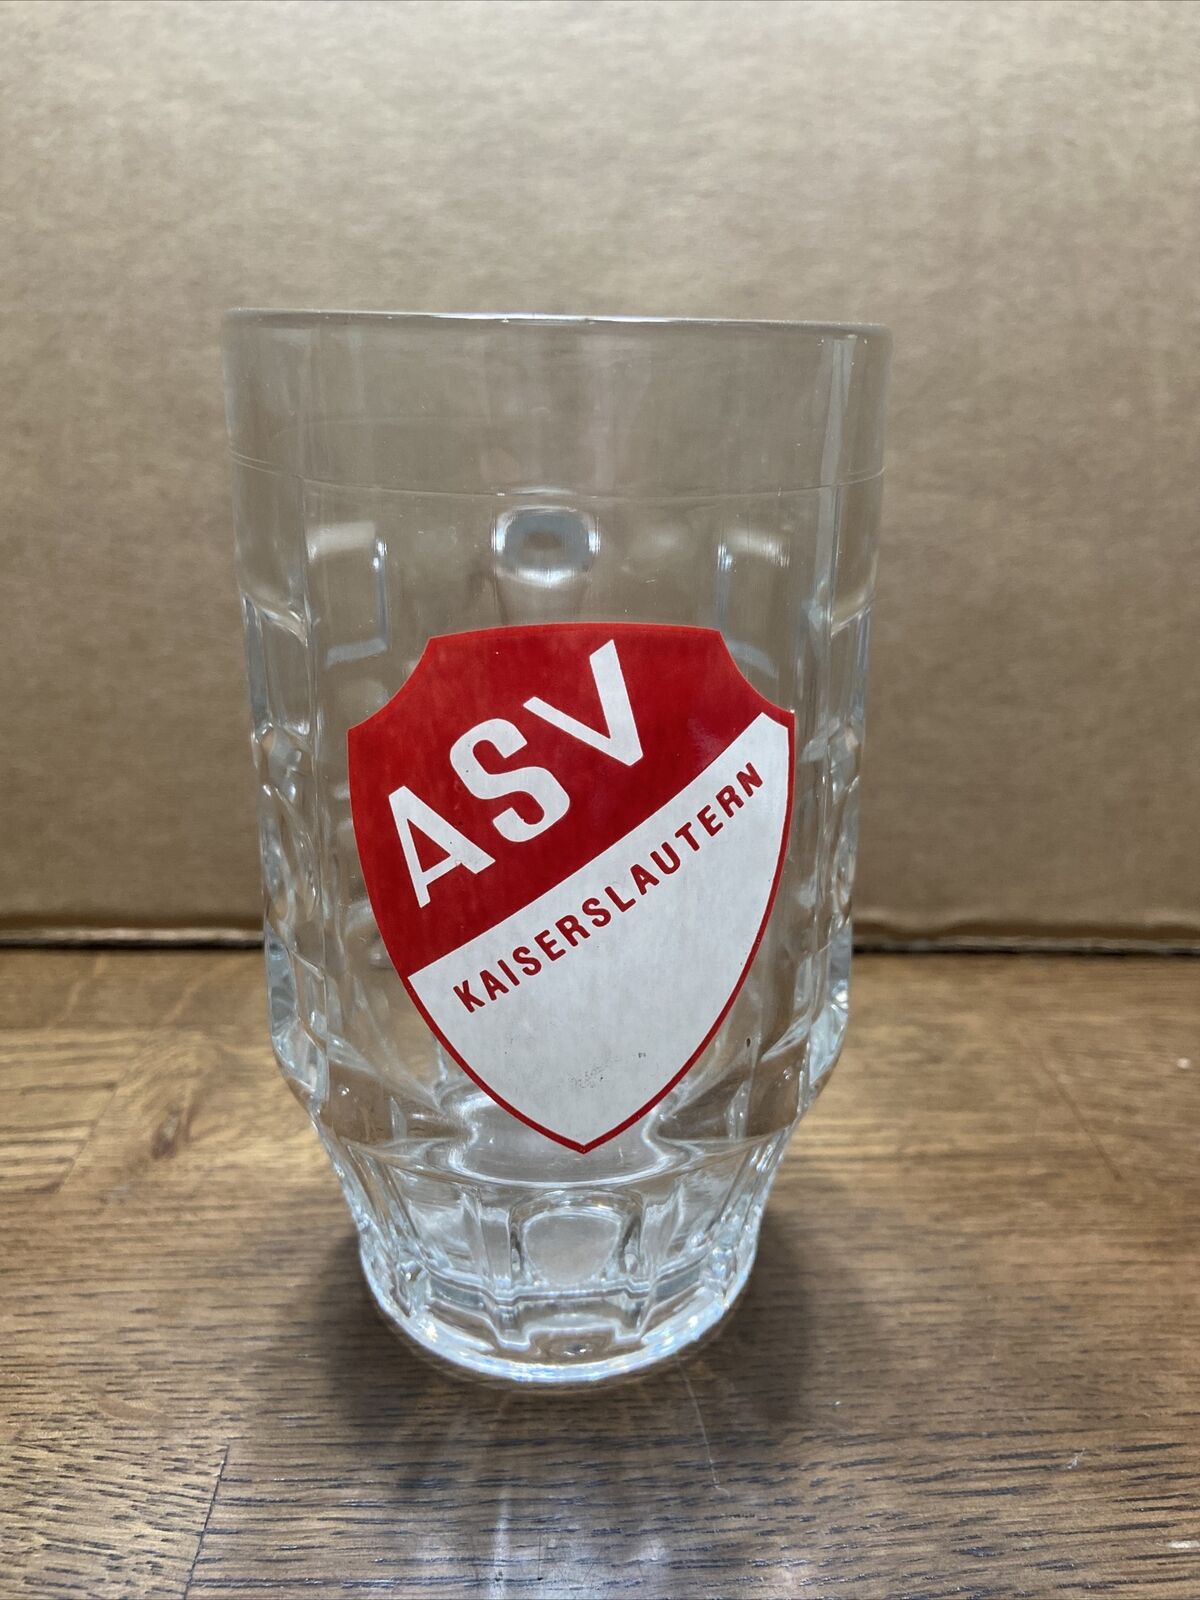 ASV Kaiserslautern Germany Beer Mug Vintage 1lbs 3ozs 5.5” Tall